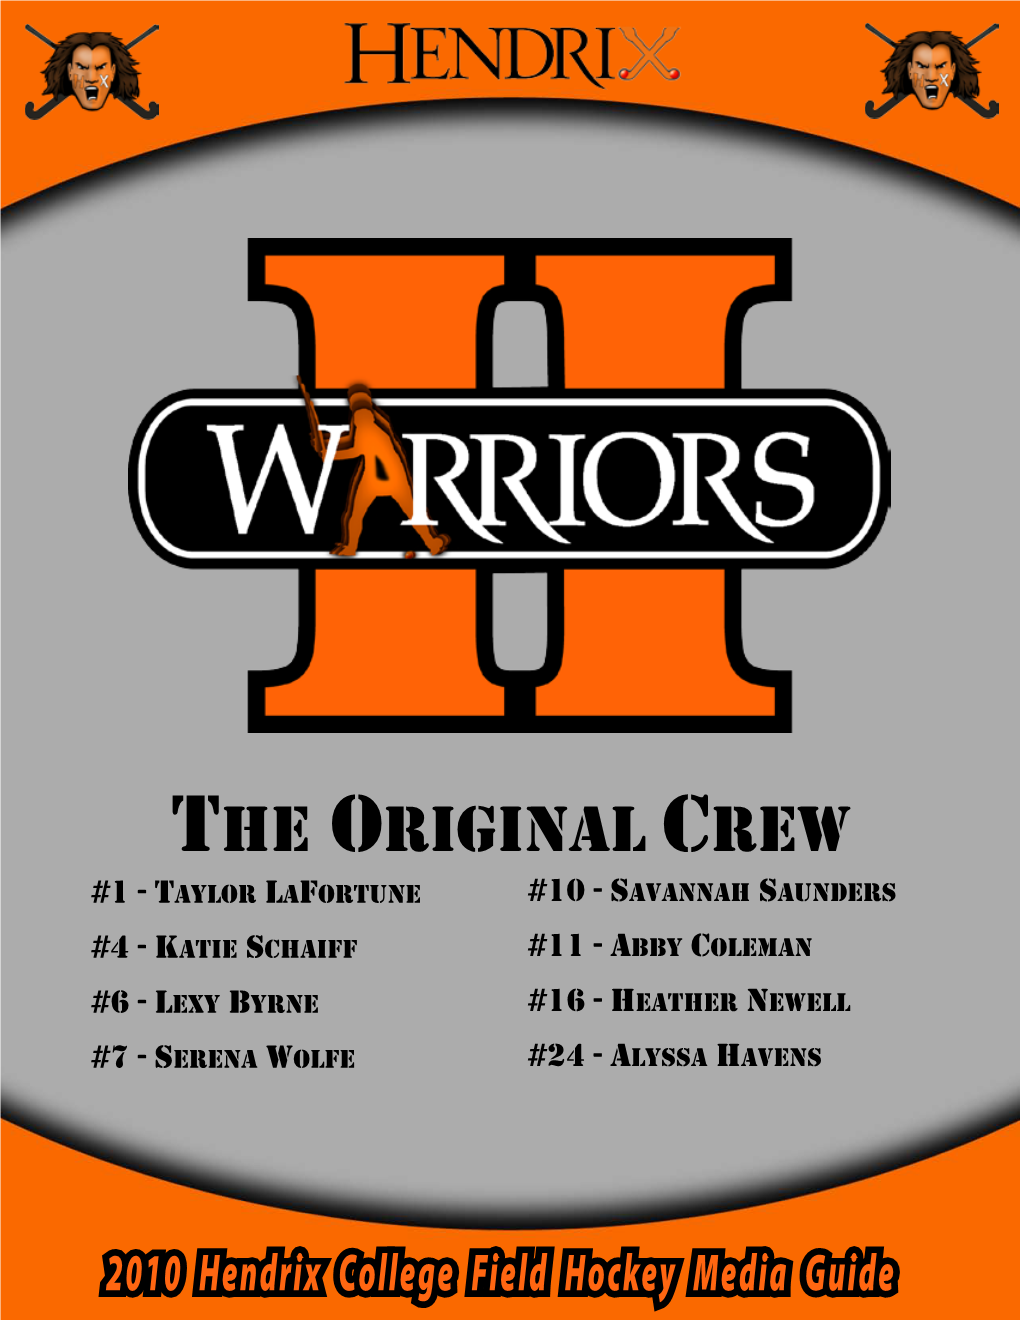 The Original Crew